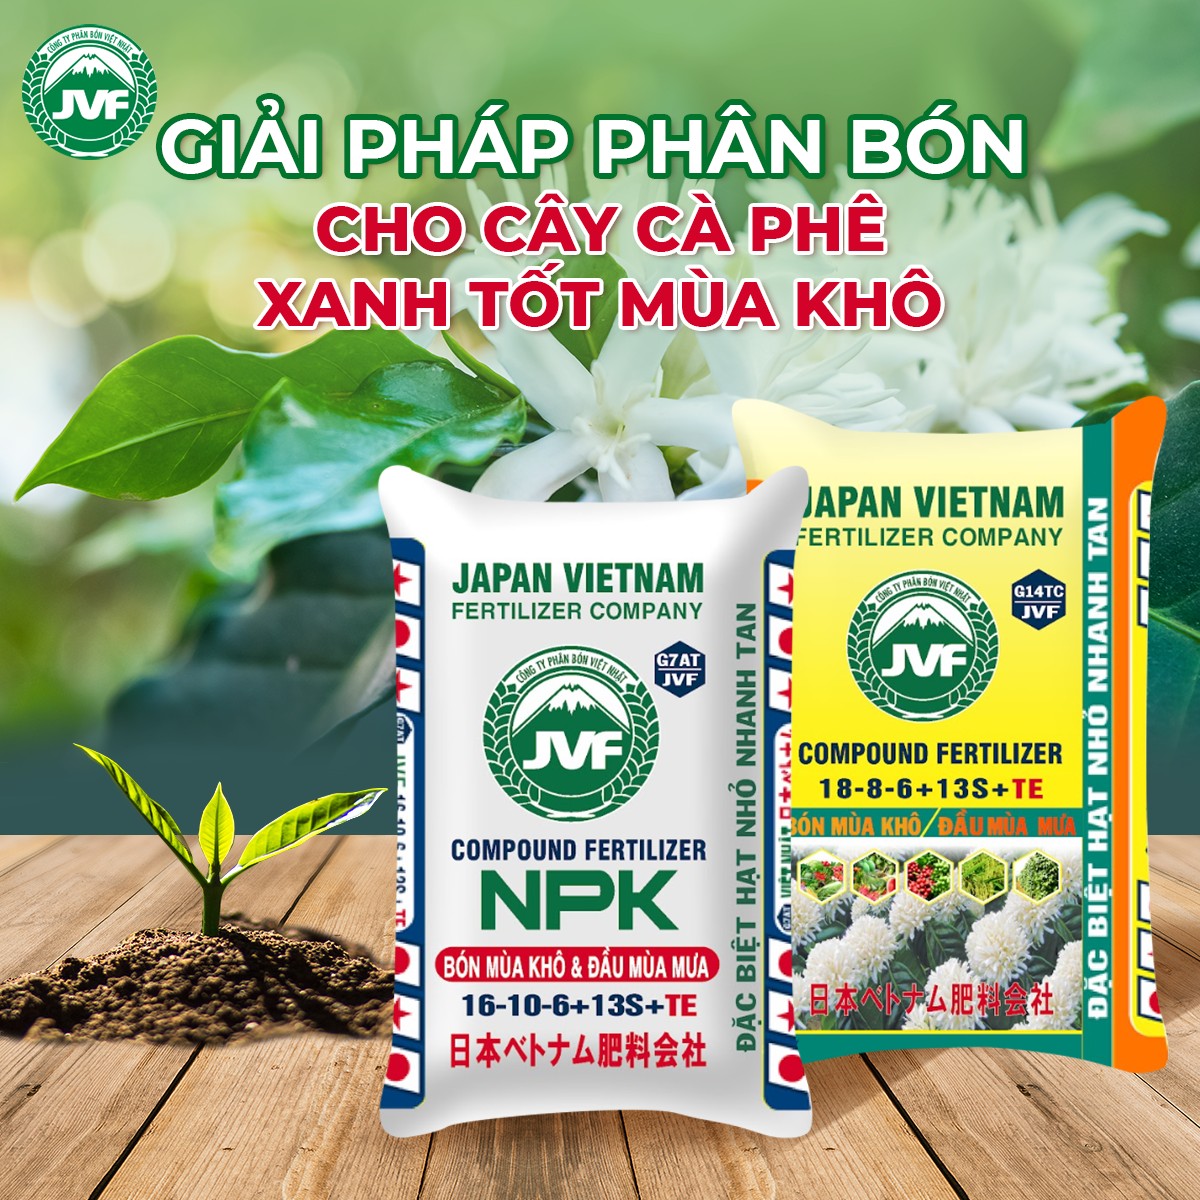 Công Ty Phân Bón Việt Nhật (JVF) ảnh 1